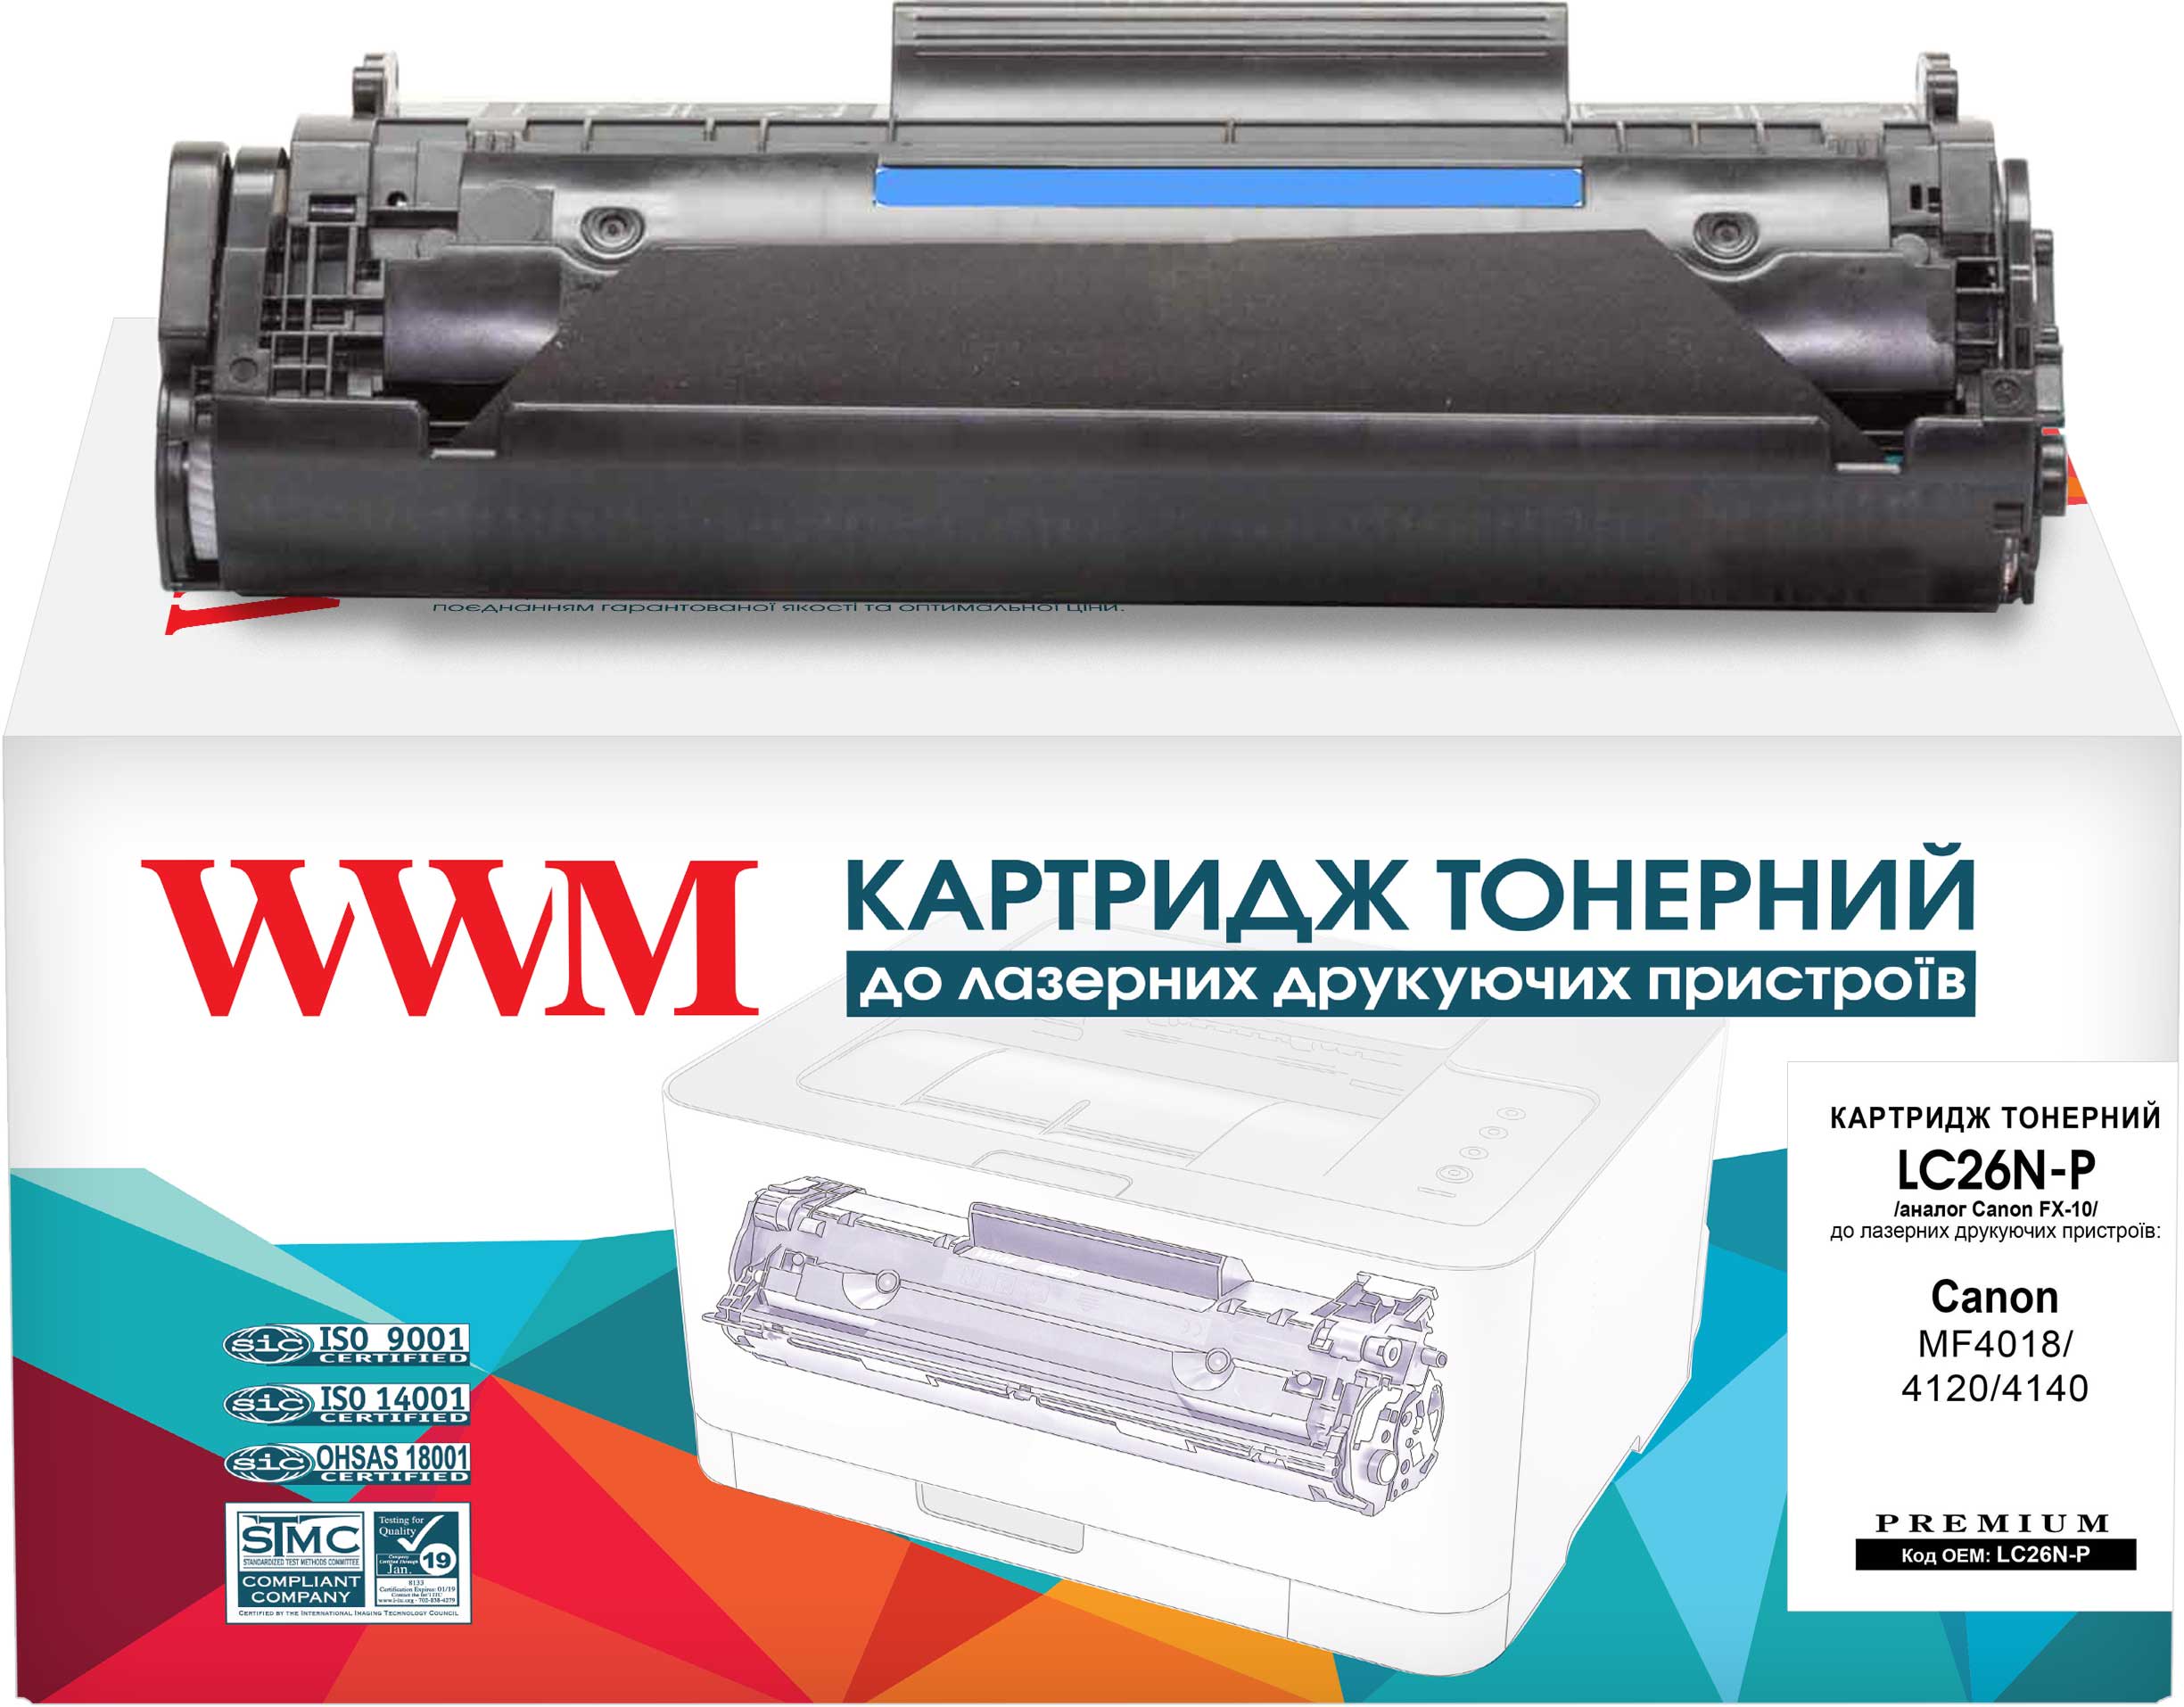 Картриджи WWM аналог Canon FX-10 для Canon i-Sensys MF4018 Купить картриджи.